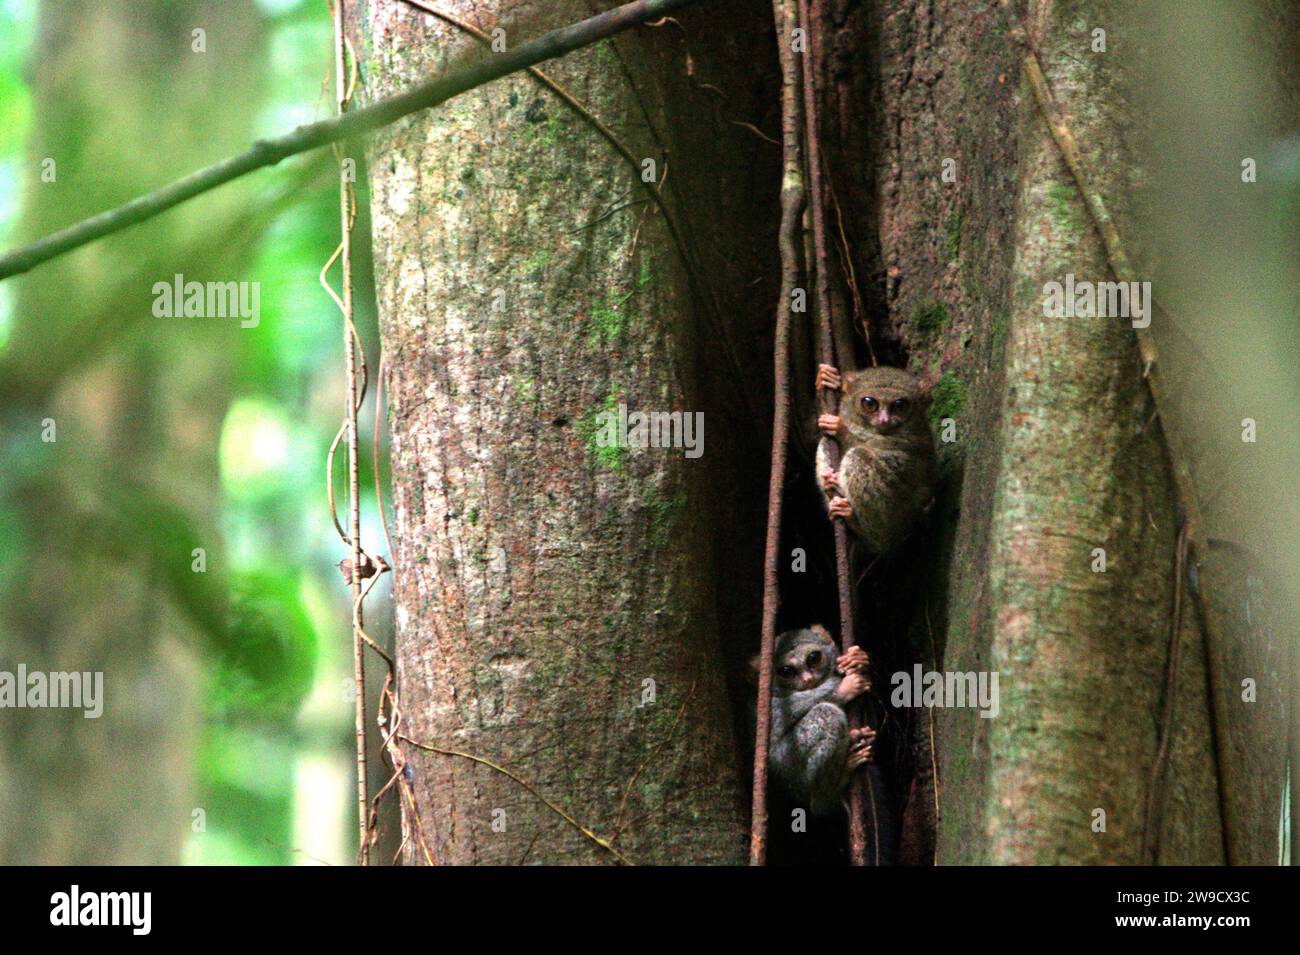 Due individui del tarsiere spettrale di Gursky (Tarsius spectrumgurskyae), un primate notturno, sono visibili in piena luce del giorno sul loro nido nella foresta pluviale della riserva naturale di Tangkoko, Sulawesi settentrionale, Indonesia. L'International Union for Conservation of Nature (IUCN) conclude che l'aumento delle temperature ha portato, tra l'altro, a cambiamenti ecologici, comportamentali e fisiologici nelle specie animali e nella biodiversità. "Oltre all'aumento dei tassi di malattie e di habitat degradati, il cambiamento climatico sta anche causando cambiamenti nelle specie stesse, che minacciano la loro sopravvivenza", hanno scritto in... Foto Stock